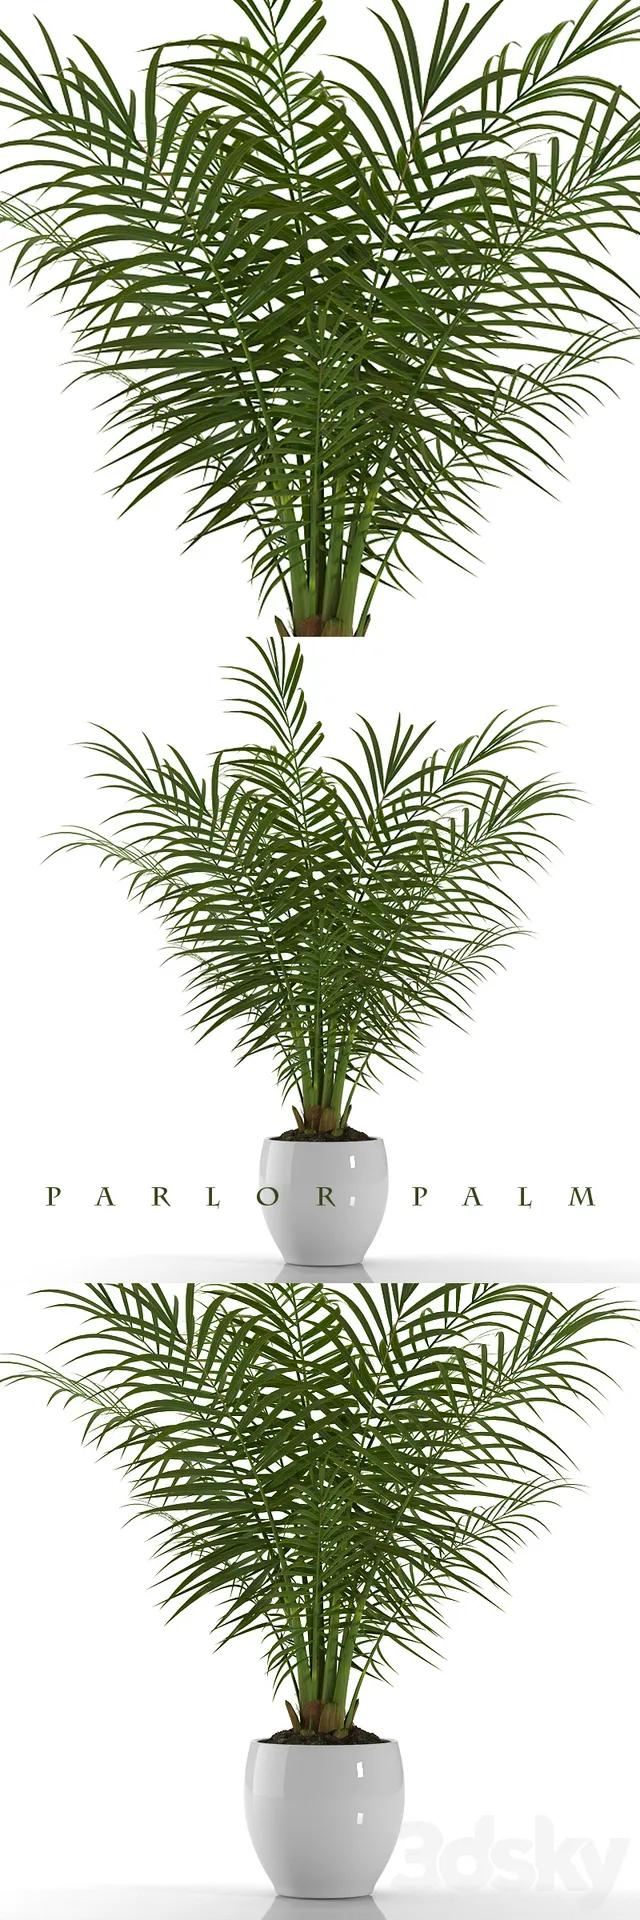 Plants – Flowers – 3D Models Download – PARLOR PALM.PLANTS 23